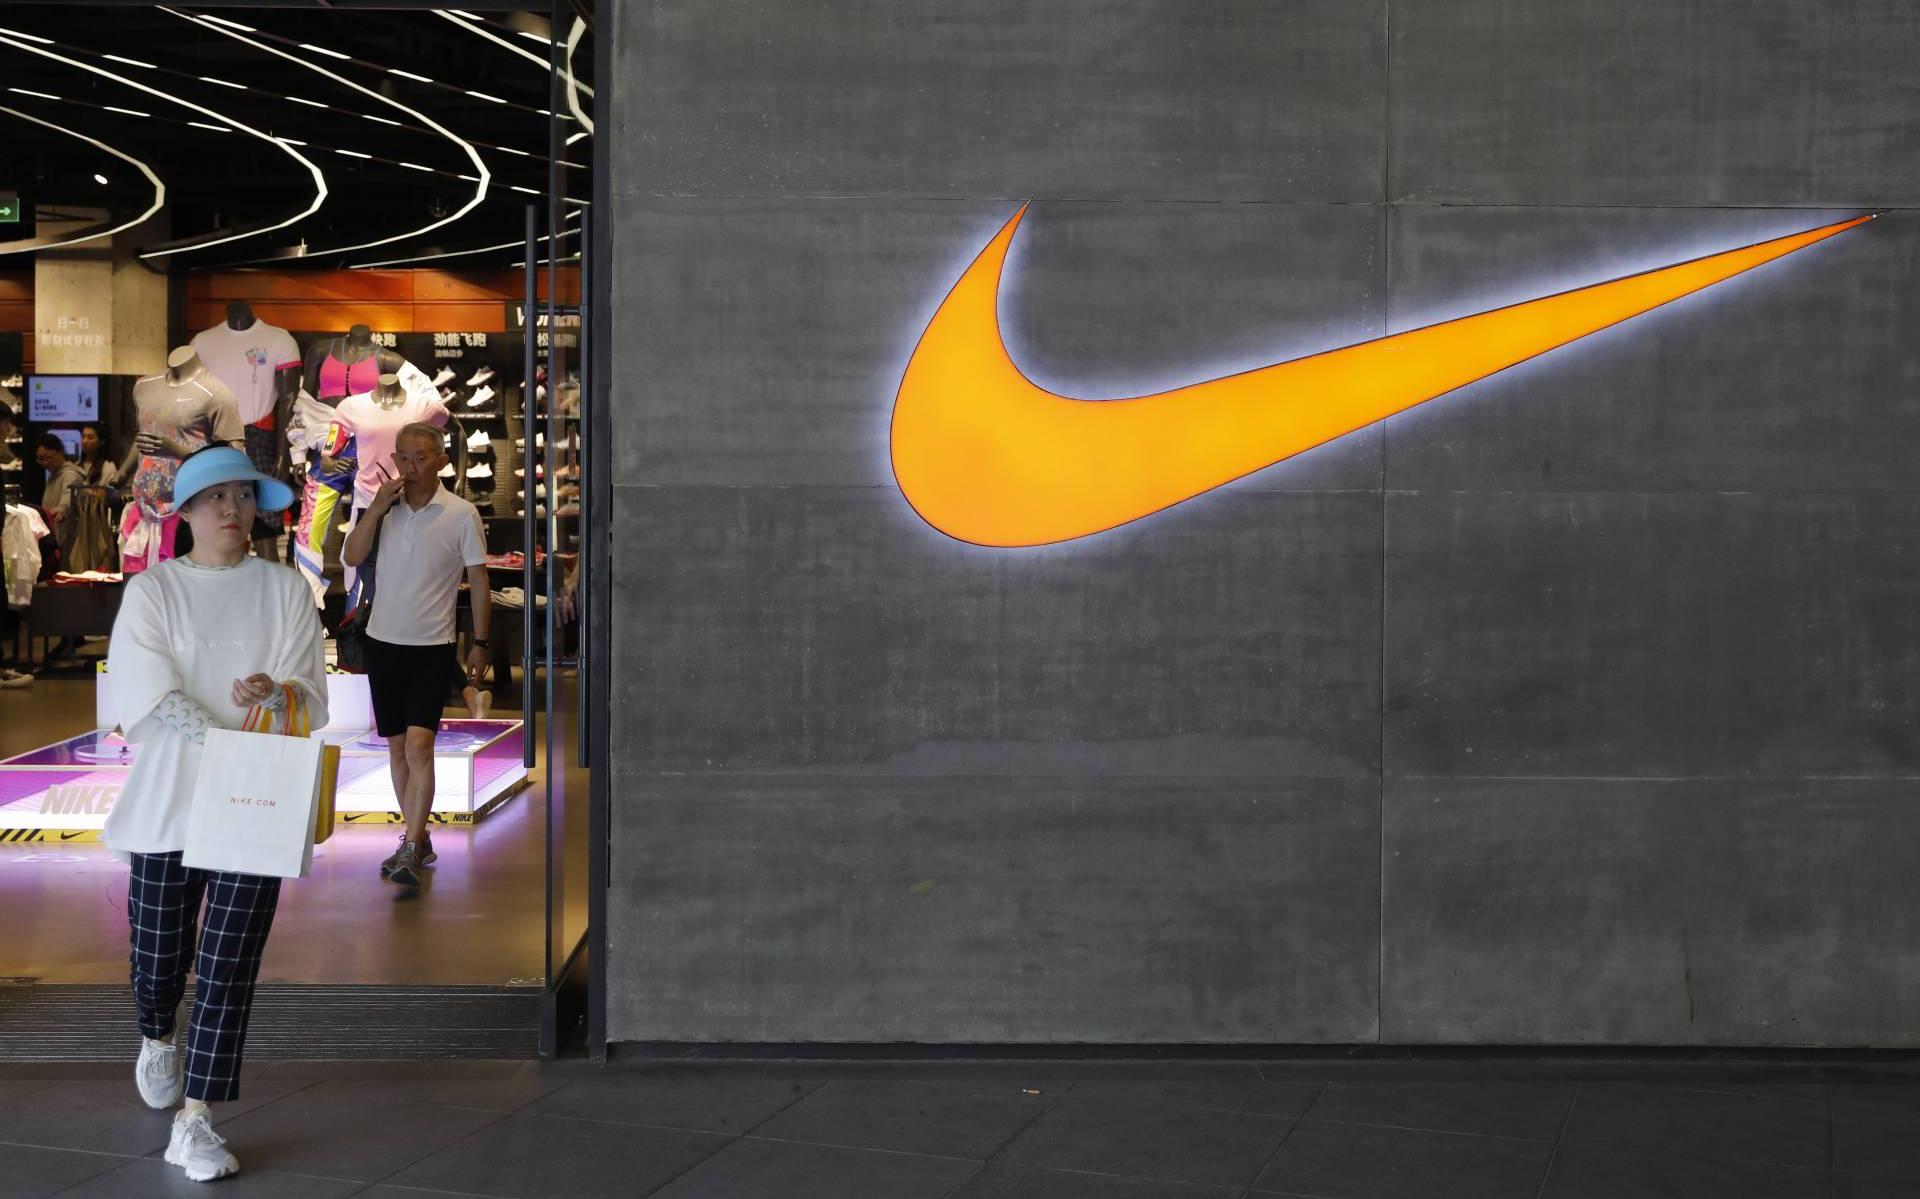 afbreken bereiden Tactiel gevoel Sportmerk Nike ziet kwartaalomzet bijna verdubbelen - Leeuwarder Courant